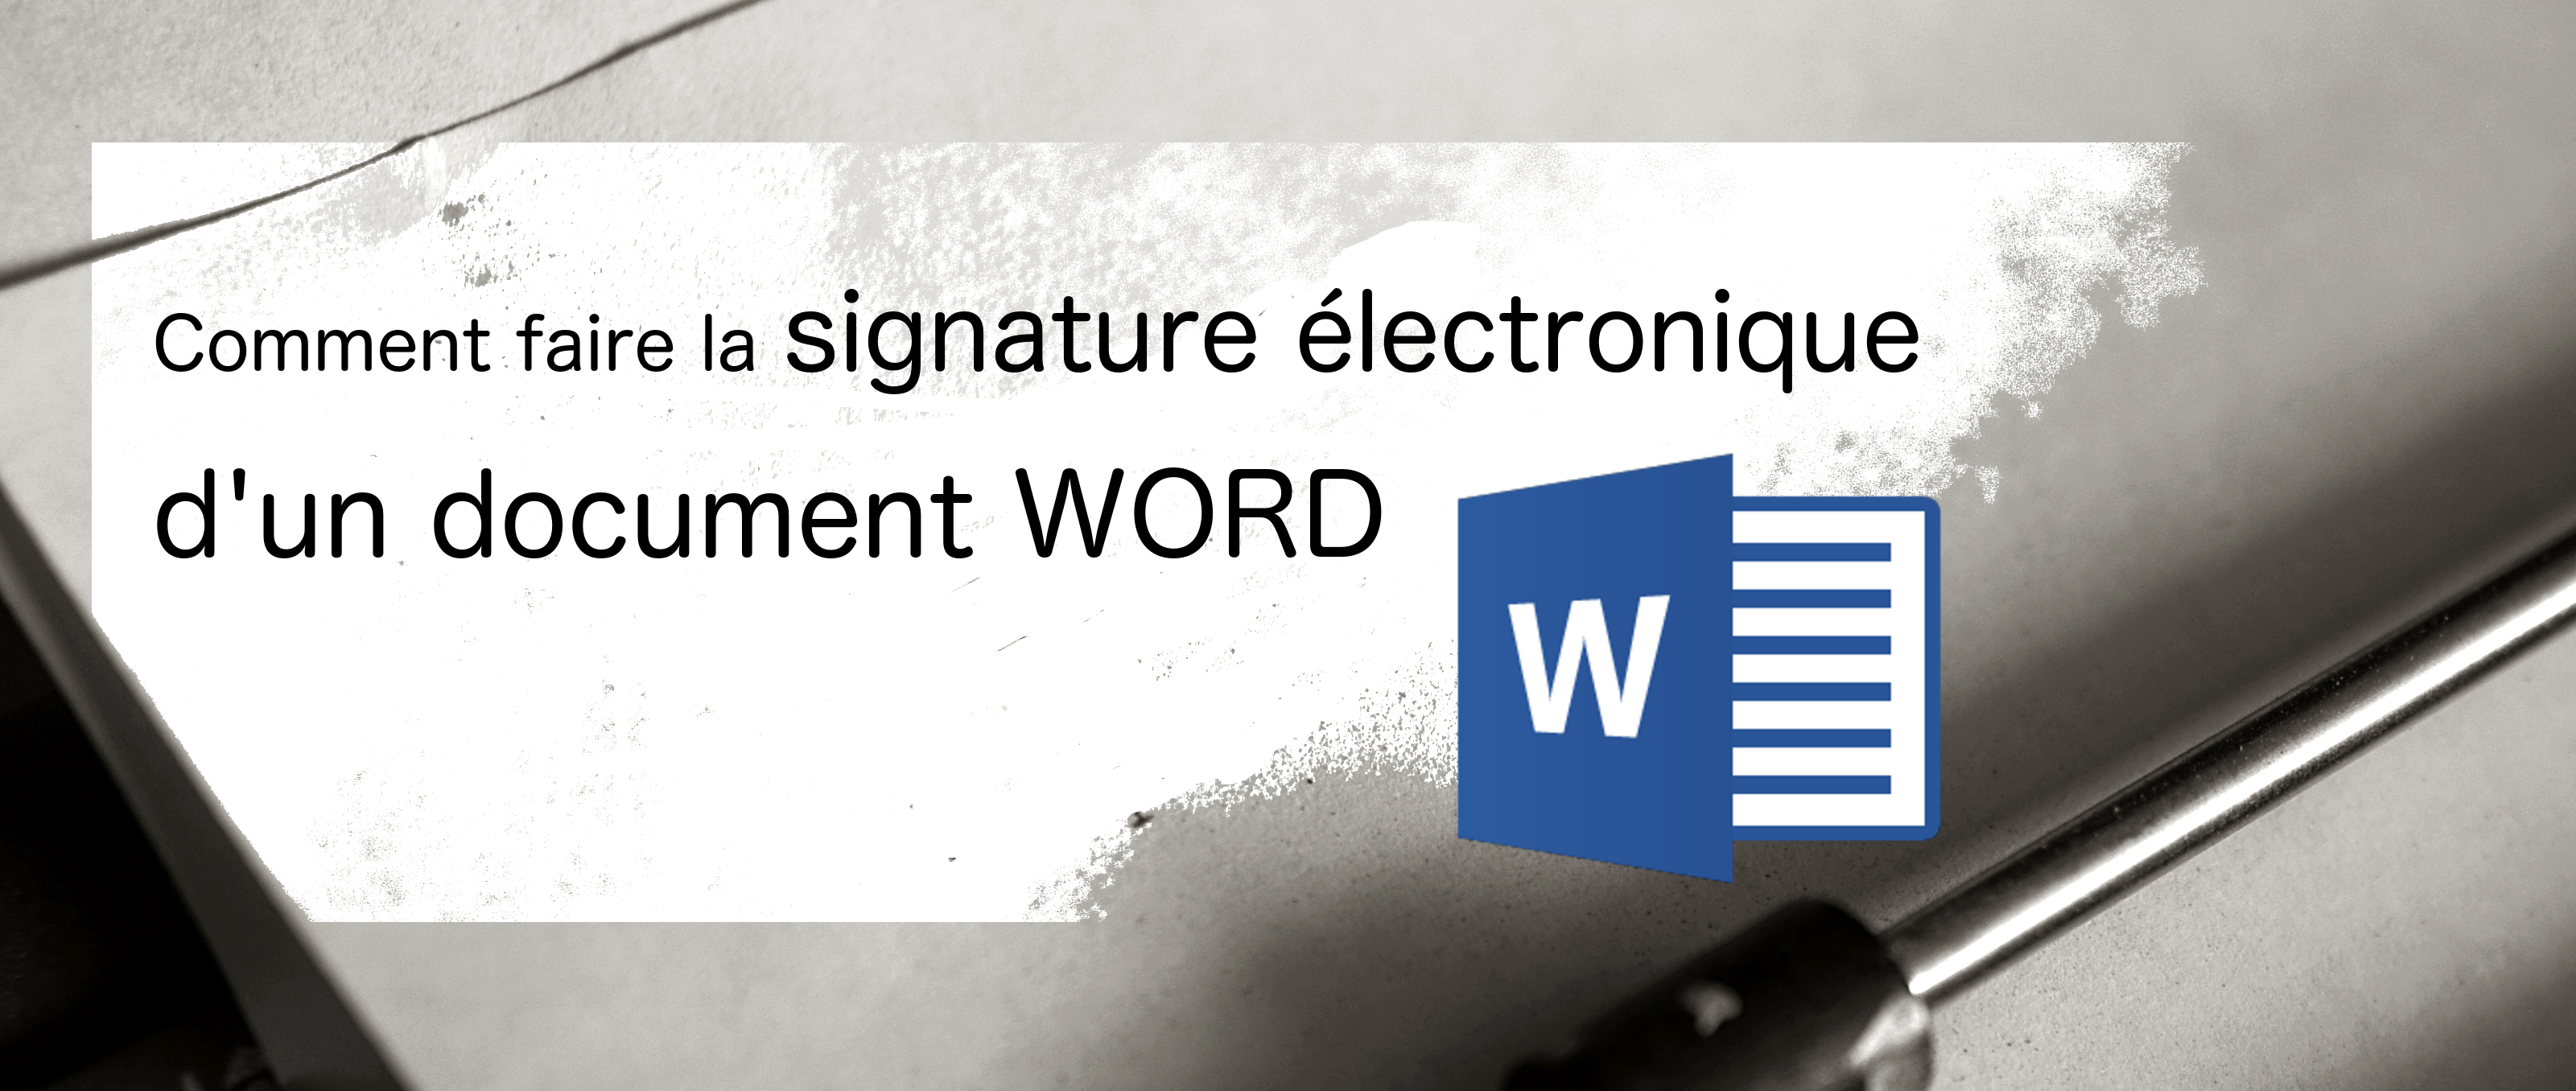 enregistrement du webinar comment faire la signature electronique d un document word signature electronique et digitalisation